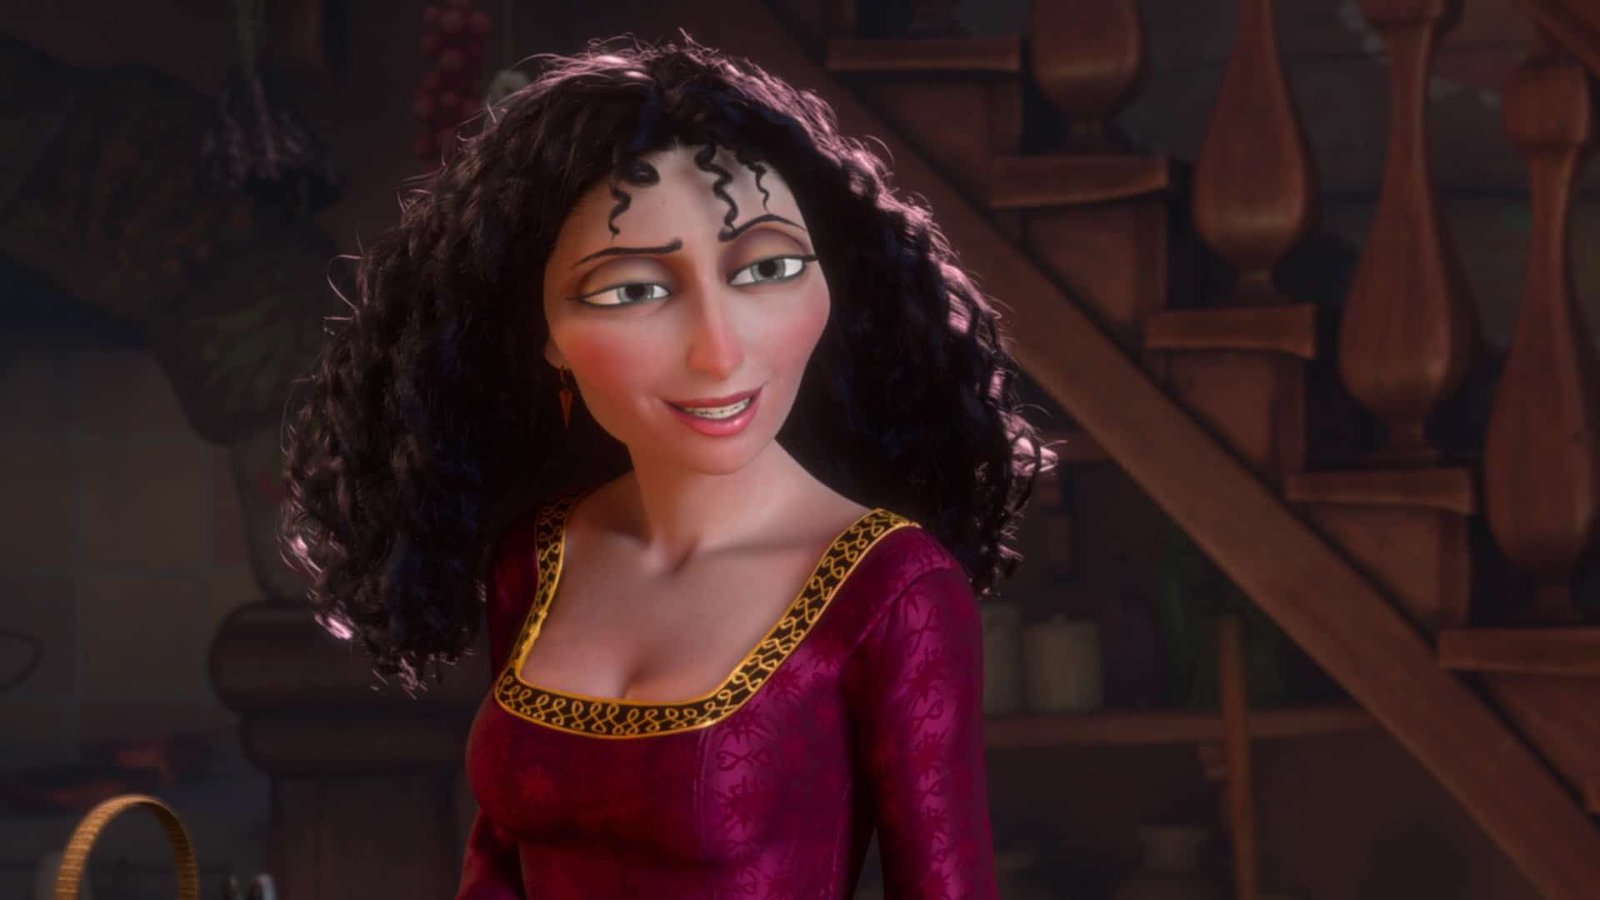 Un personnage Disney animé en 3D avec des cheveux noirs bouclés et une robe rouge, souriant chaleureusement dans une pièce confortable et faiblement éclairée avec un escalier en bois en arrière-plan.